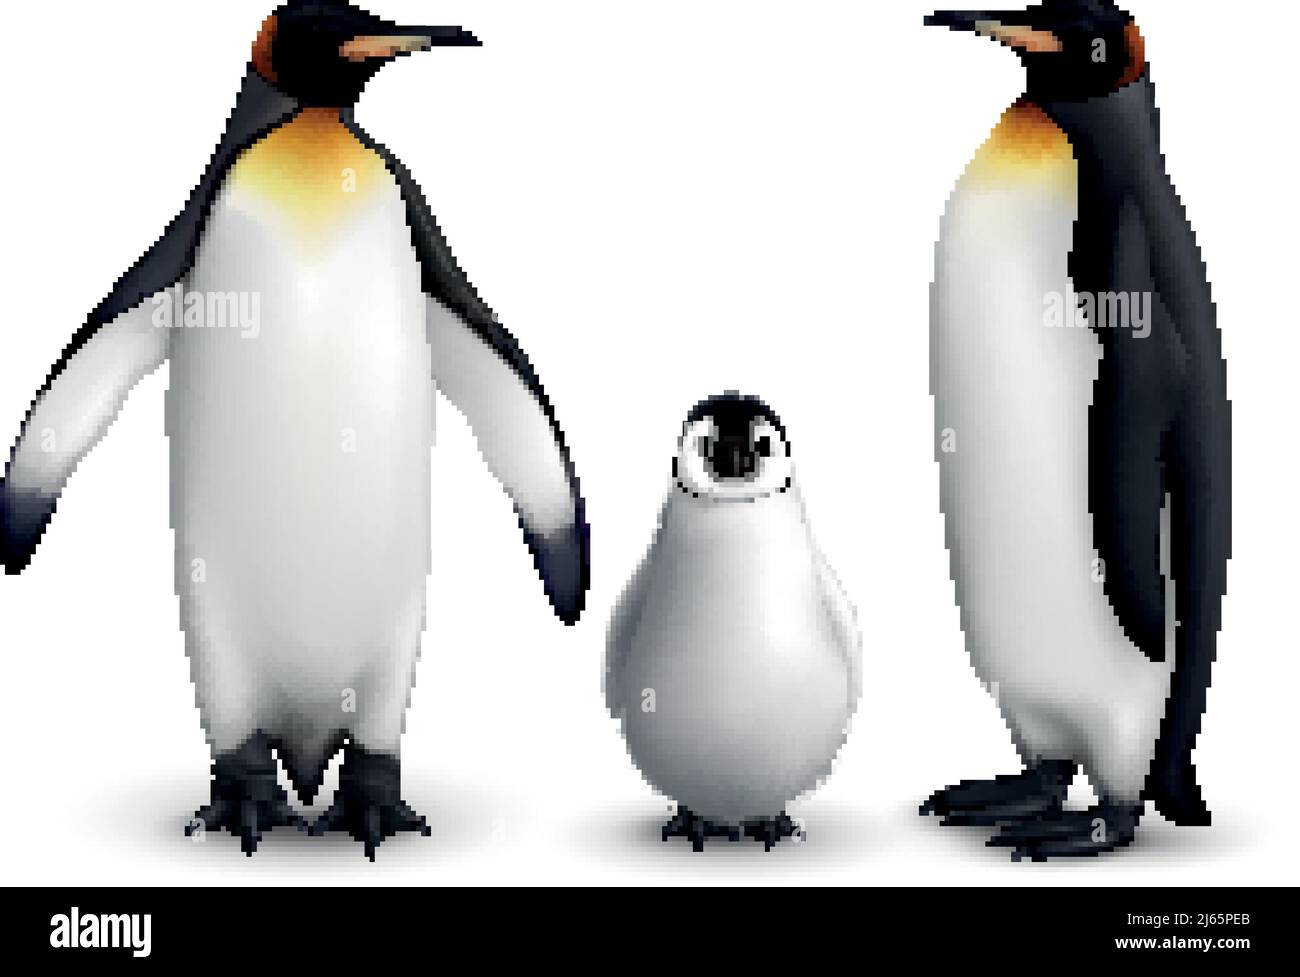 Famiglia dei pinguini del re con immagine realistica del closeup del pulcino con l'adulto illustrazione vettoriale con vista frontale e laterale degli uccelli Illustrazione Vettoriale